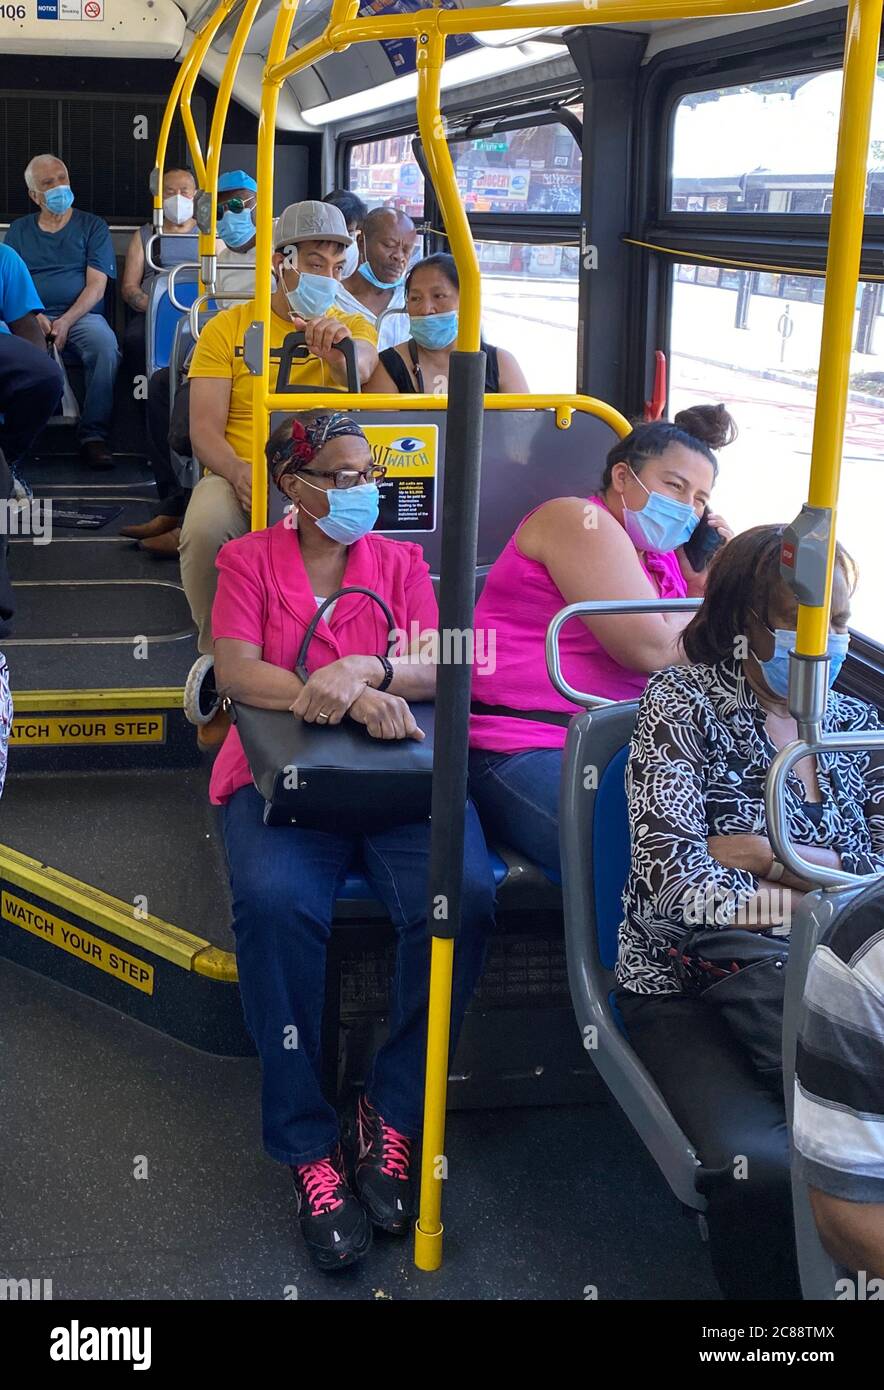 Da immer mehr Menschen beginnen, sich in New York City zu bewegen, halten die Menschen ihre Masken im Allgemeinen, aber soziale Distanzierung auf öffentlichen Verkehrsmitteln wird ein Ding der Vergangenheit. Stadtbus, Church Avenue, Brooklyn. Stockfoto